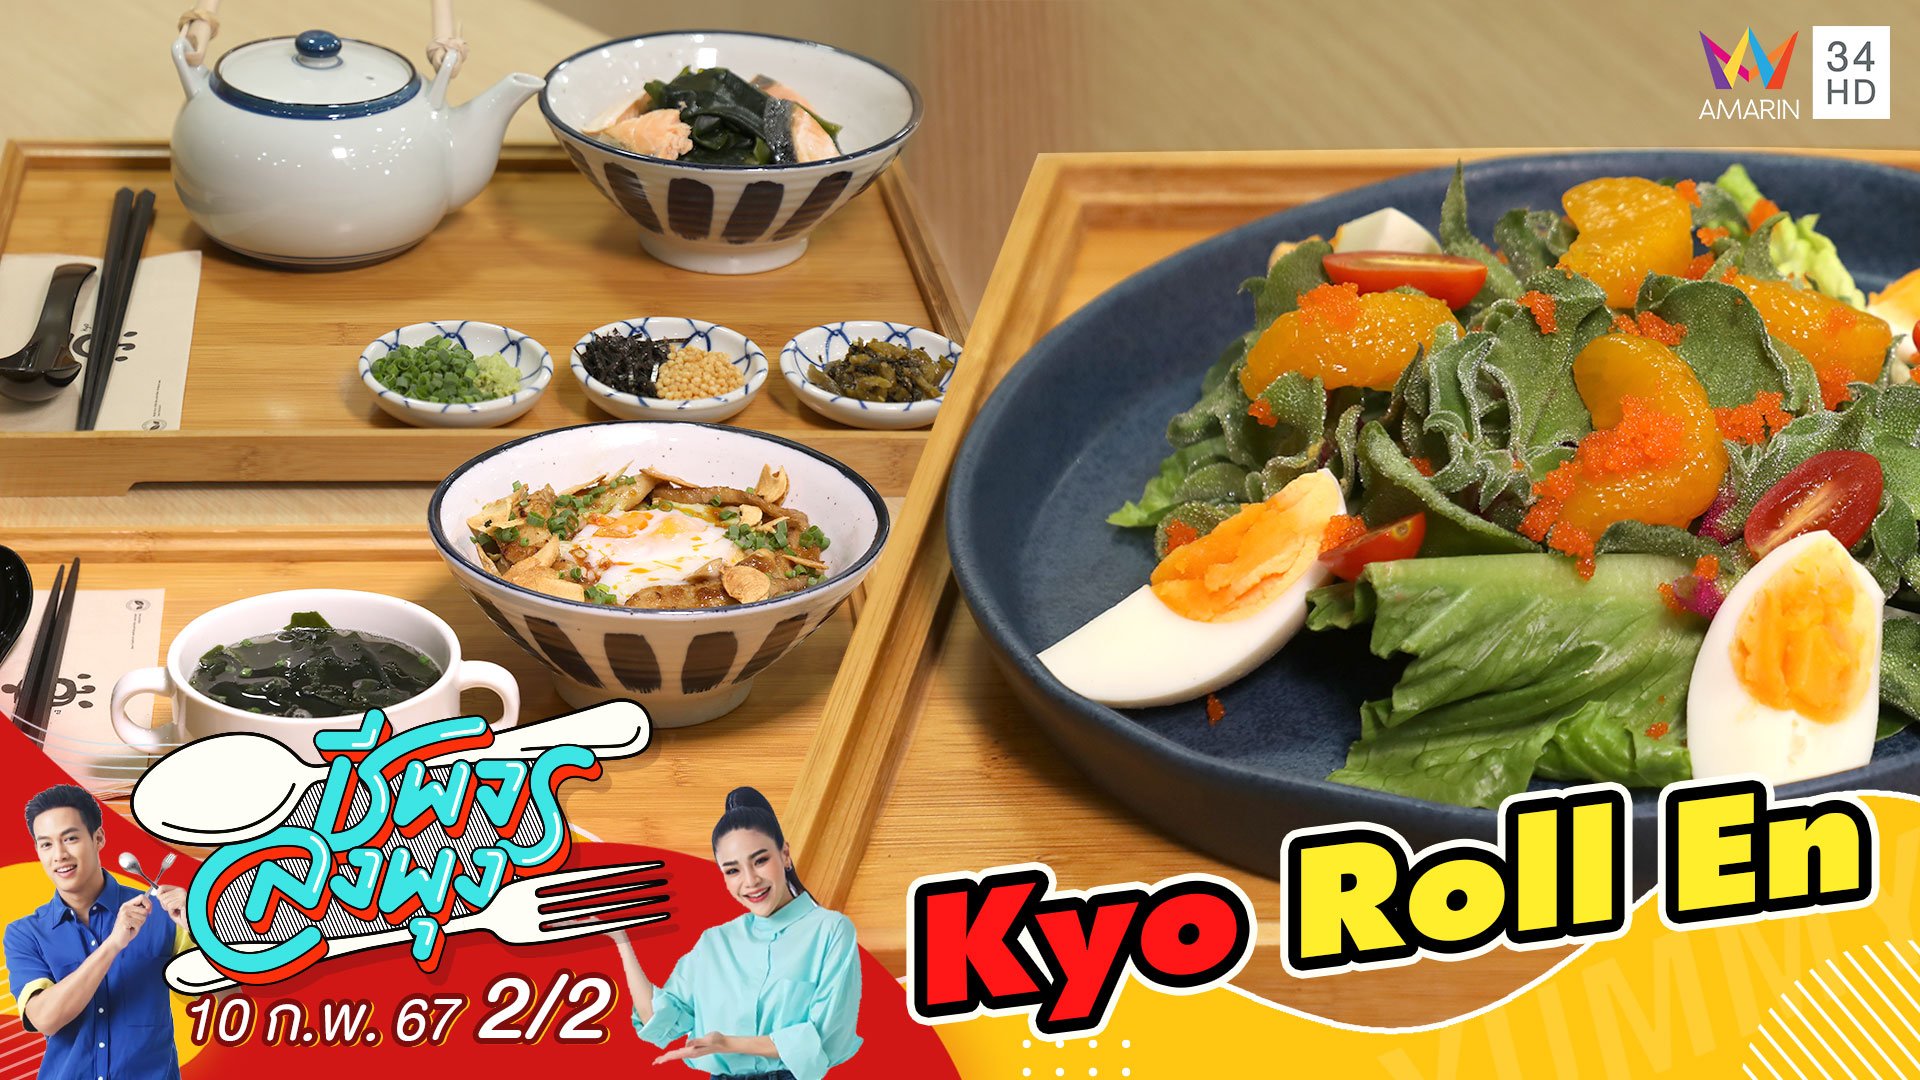 "ร้าน Kyo Roll En" All - Day Dining" ร้านขนมหวานสไตล์เกียวโต | ชีพจรลงพุง | 10 ก.พ. 67 (2/2) | AMARIN TVHD34